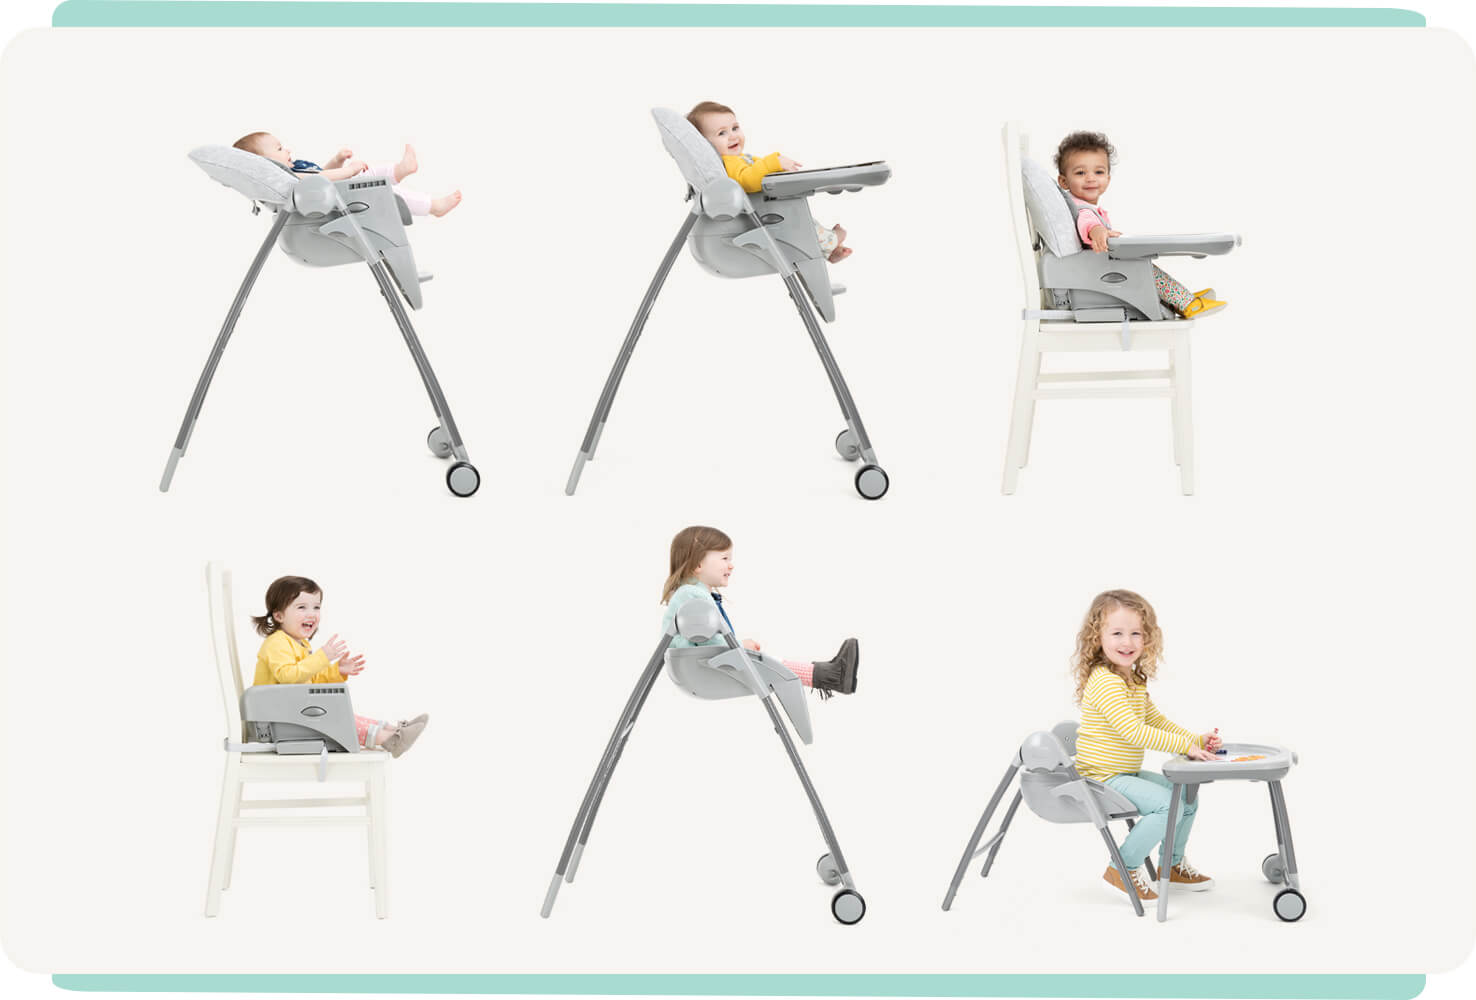  6 chaises hautes multiply montrant la position inclinable, la position assise, le rehausseur avec plateau sur la chaise, le rehausseur sans plateau sur la chaise, le rehausseur sur les pieds de la chaise haute, ainsi qu’un siège pour enfant avec plateau 